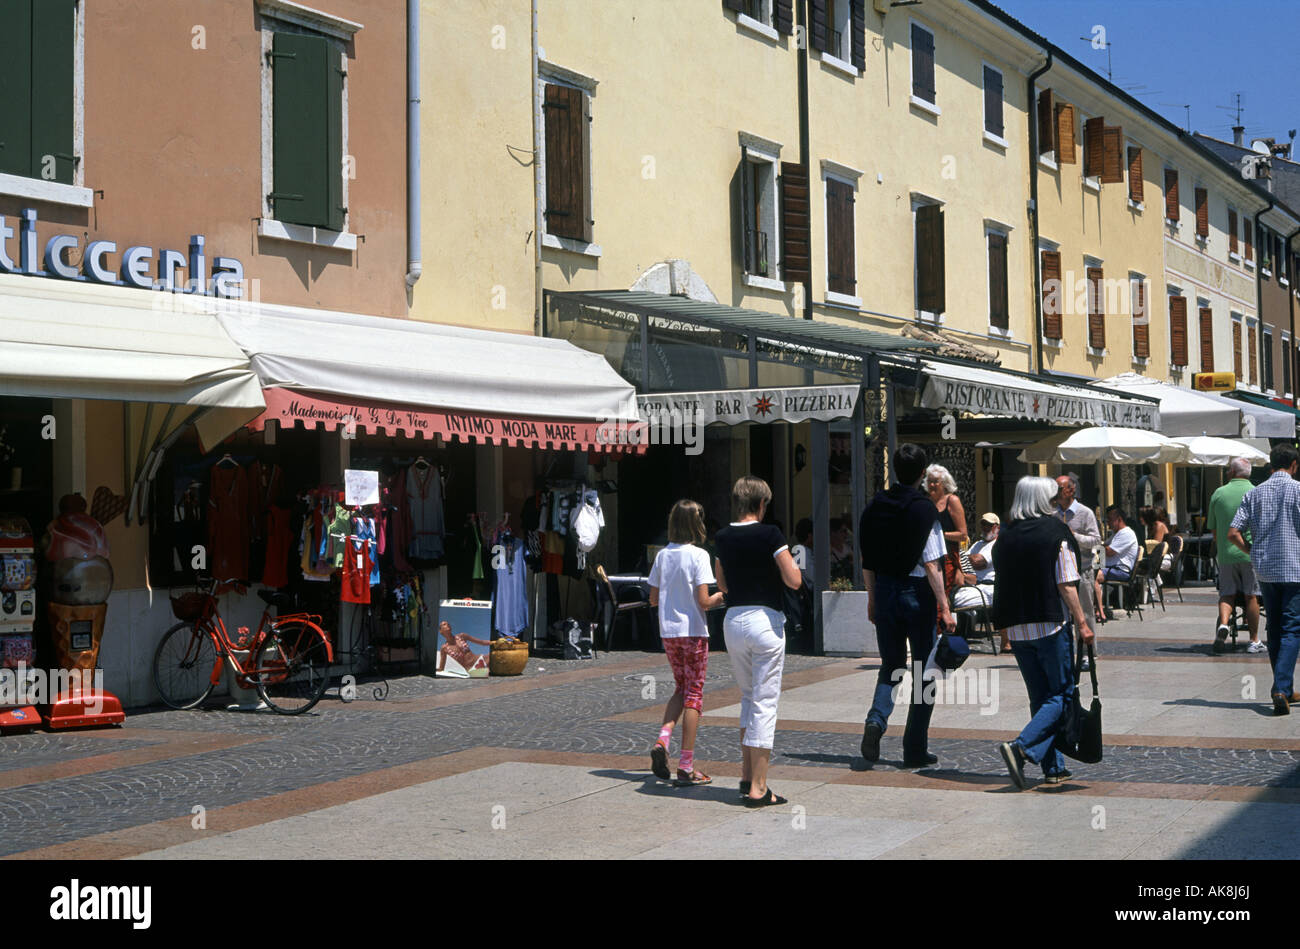 Bardolino street scene, Italy Stock Photo